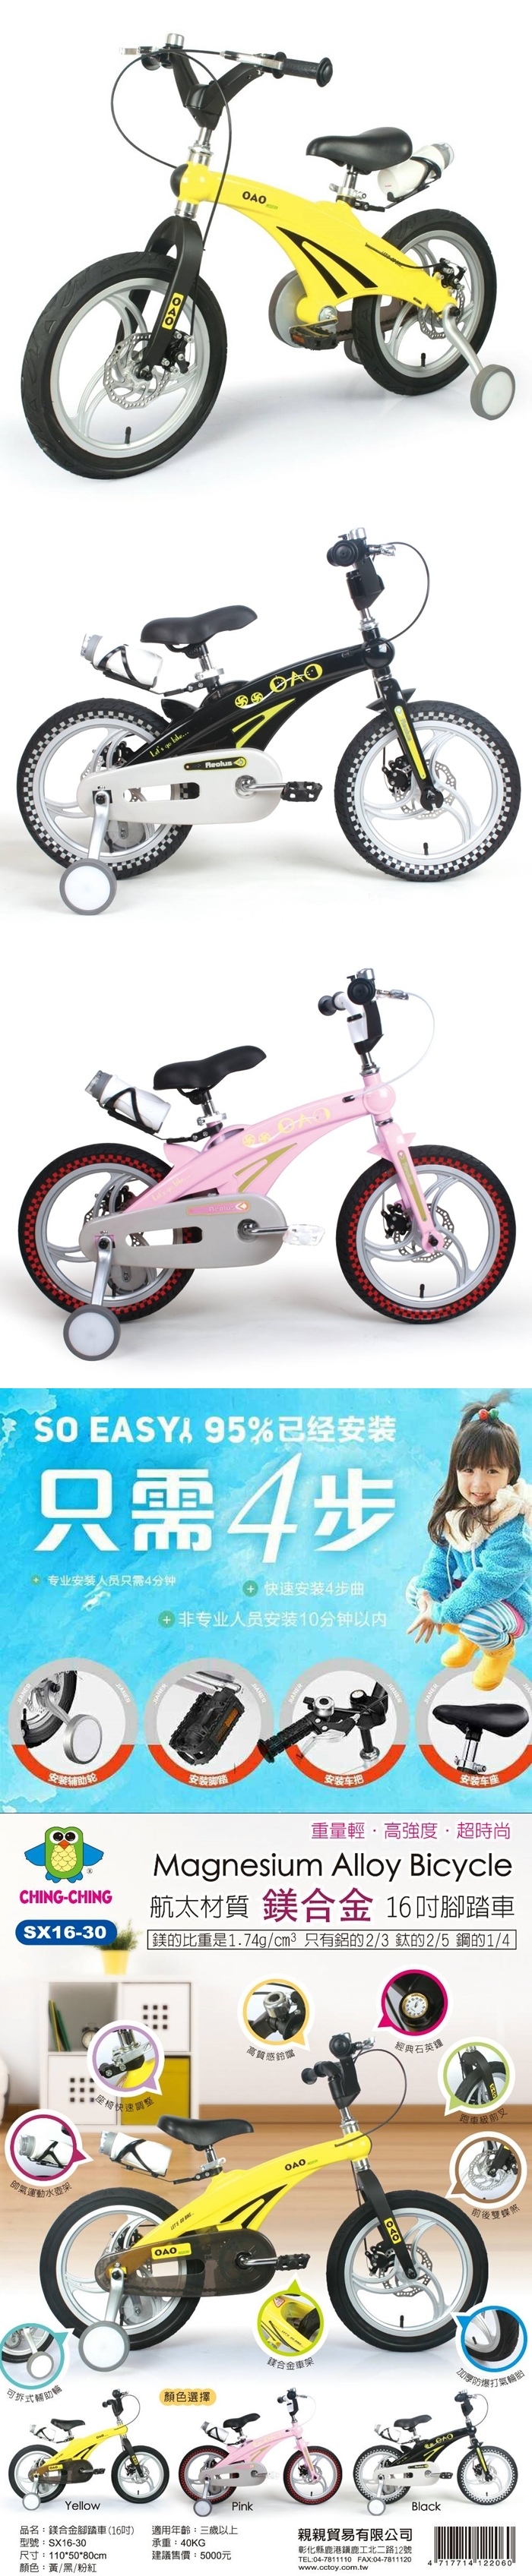 CHING-CHING親親-鎂合金16吋腳踏車(黃色)SX16-30